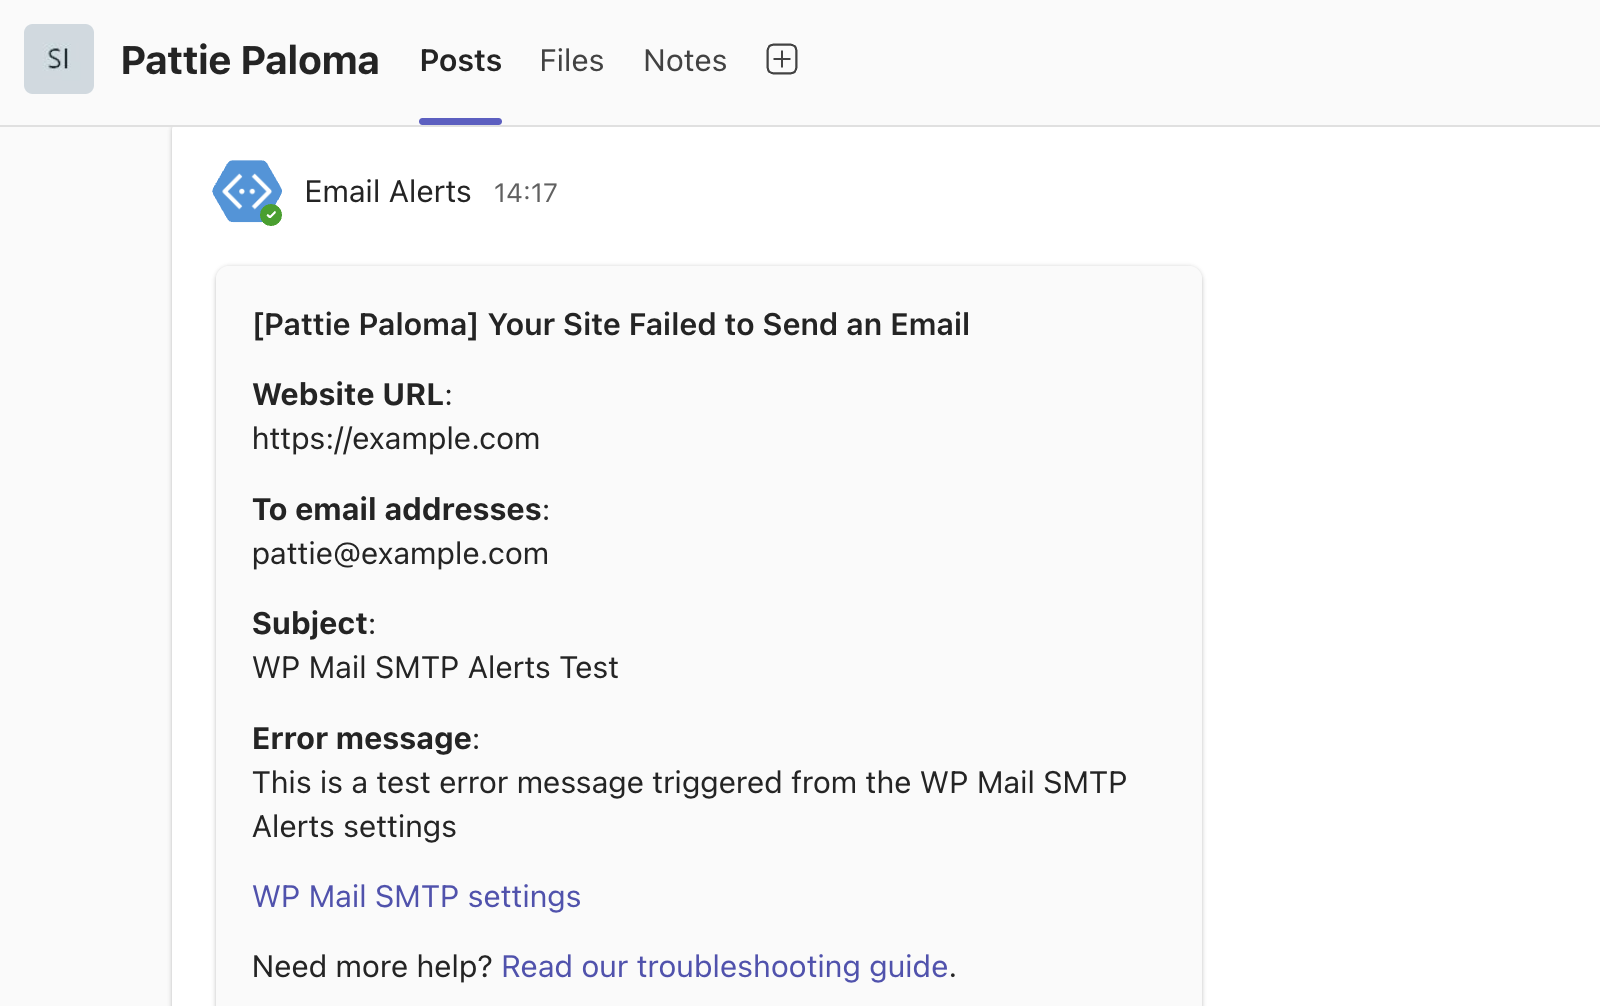 MS Teams email alert test